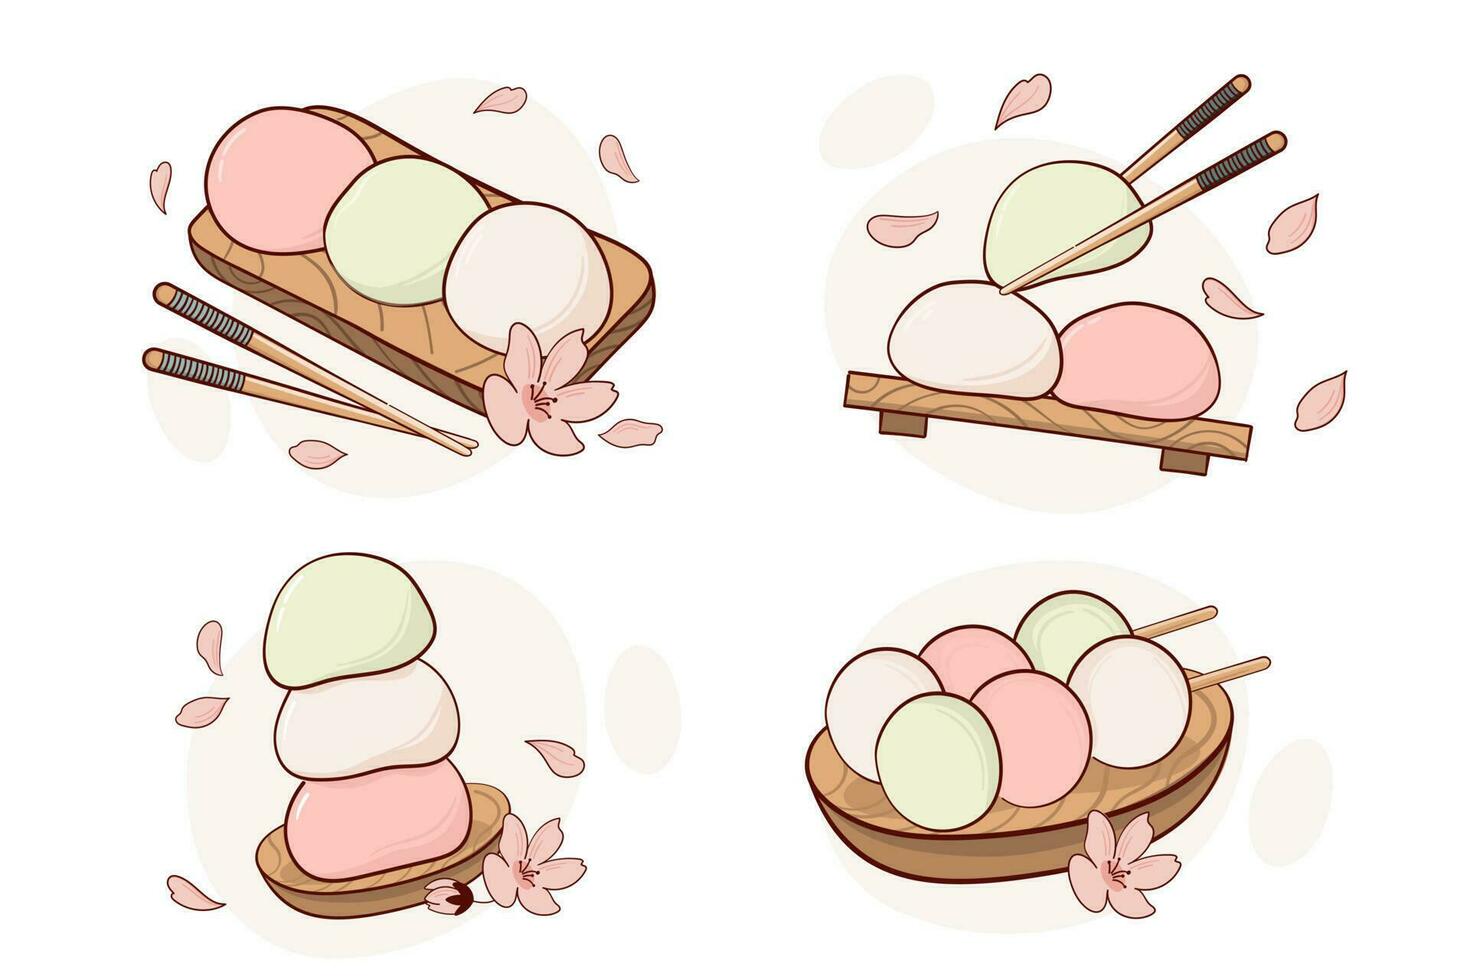 Japan Tradition Süßigkeiten Mochi Daifuku Dango Vektor Illustration. japanisch asiatisch traditionell Essen, Kochen, Speisekarte Konzept. Gekritzel Karikatur Stil.